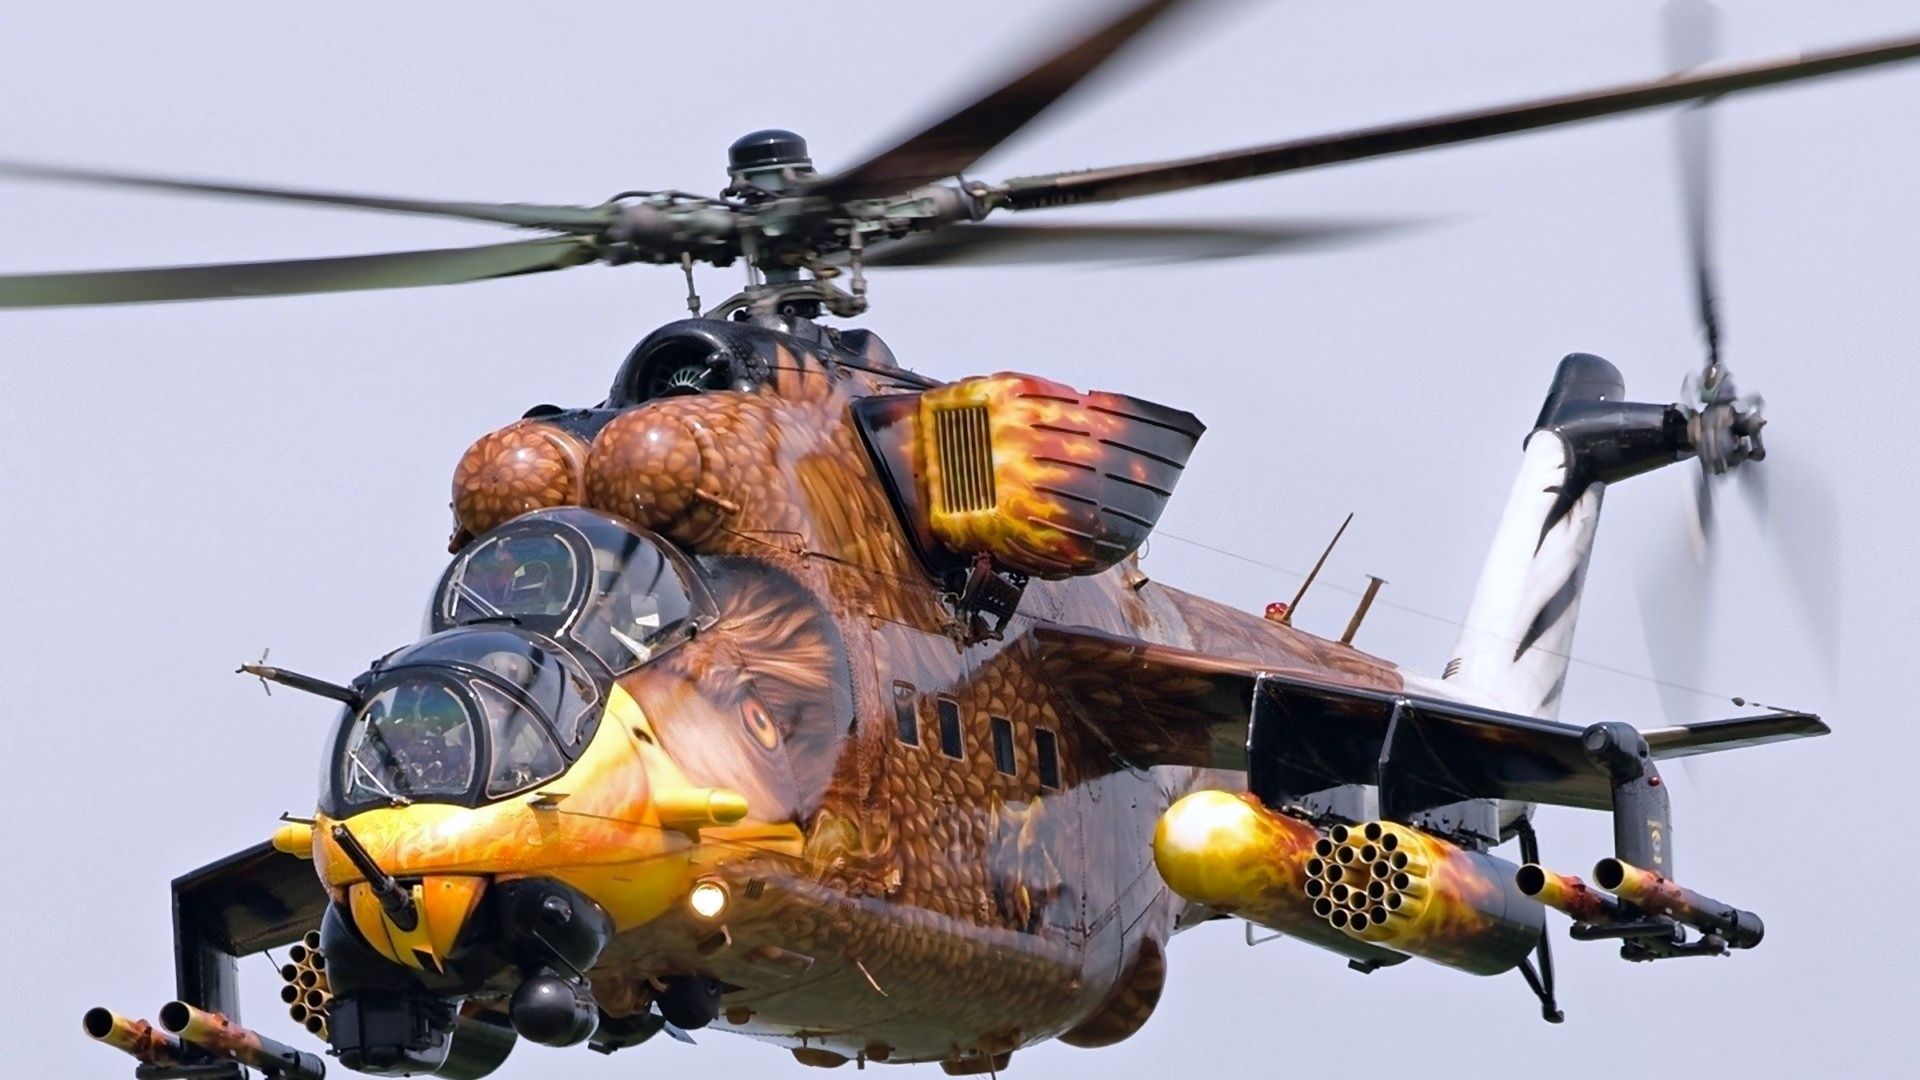 МИ-24, ударный вертолет, MI-24, fighter helicopter (horizontal)